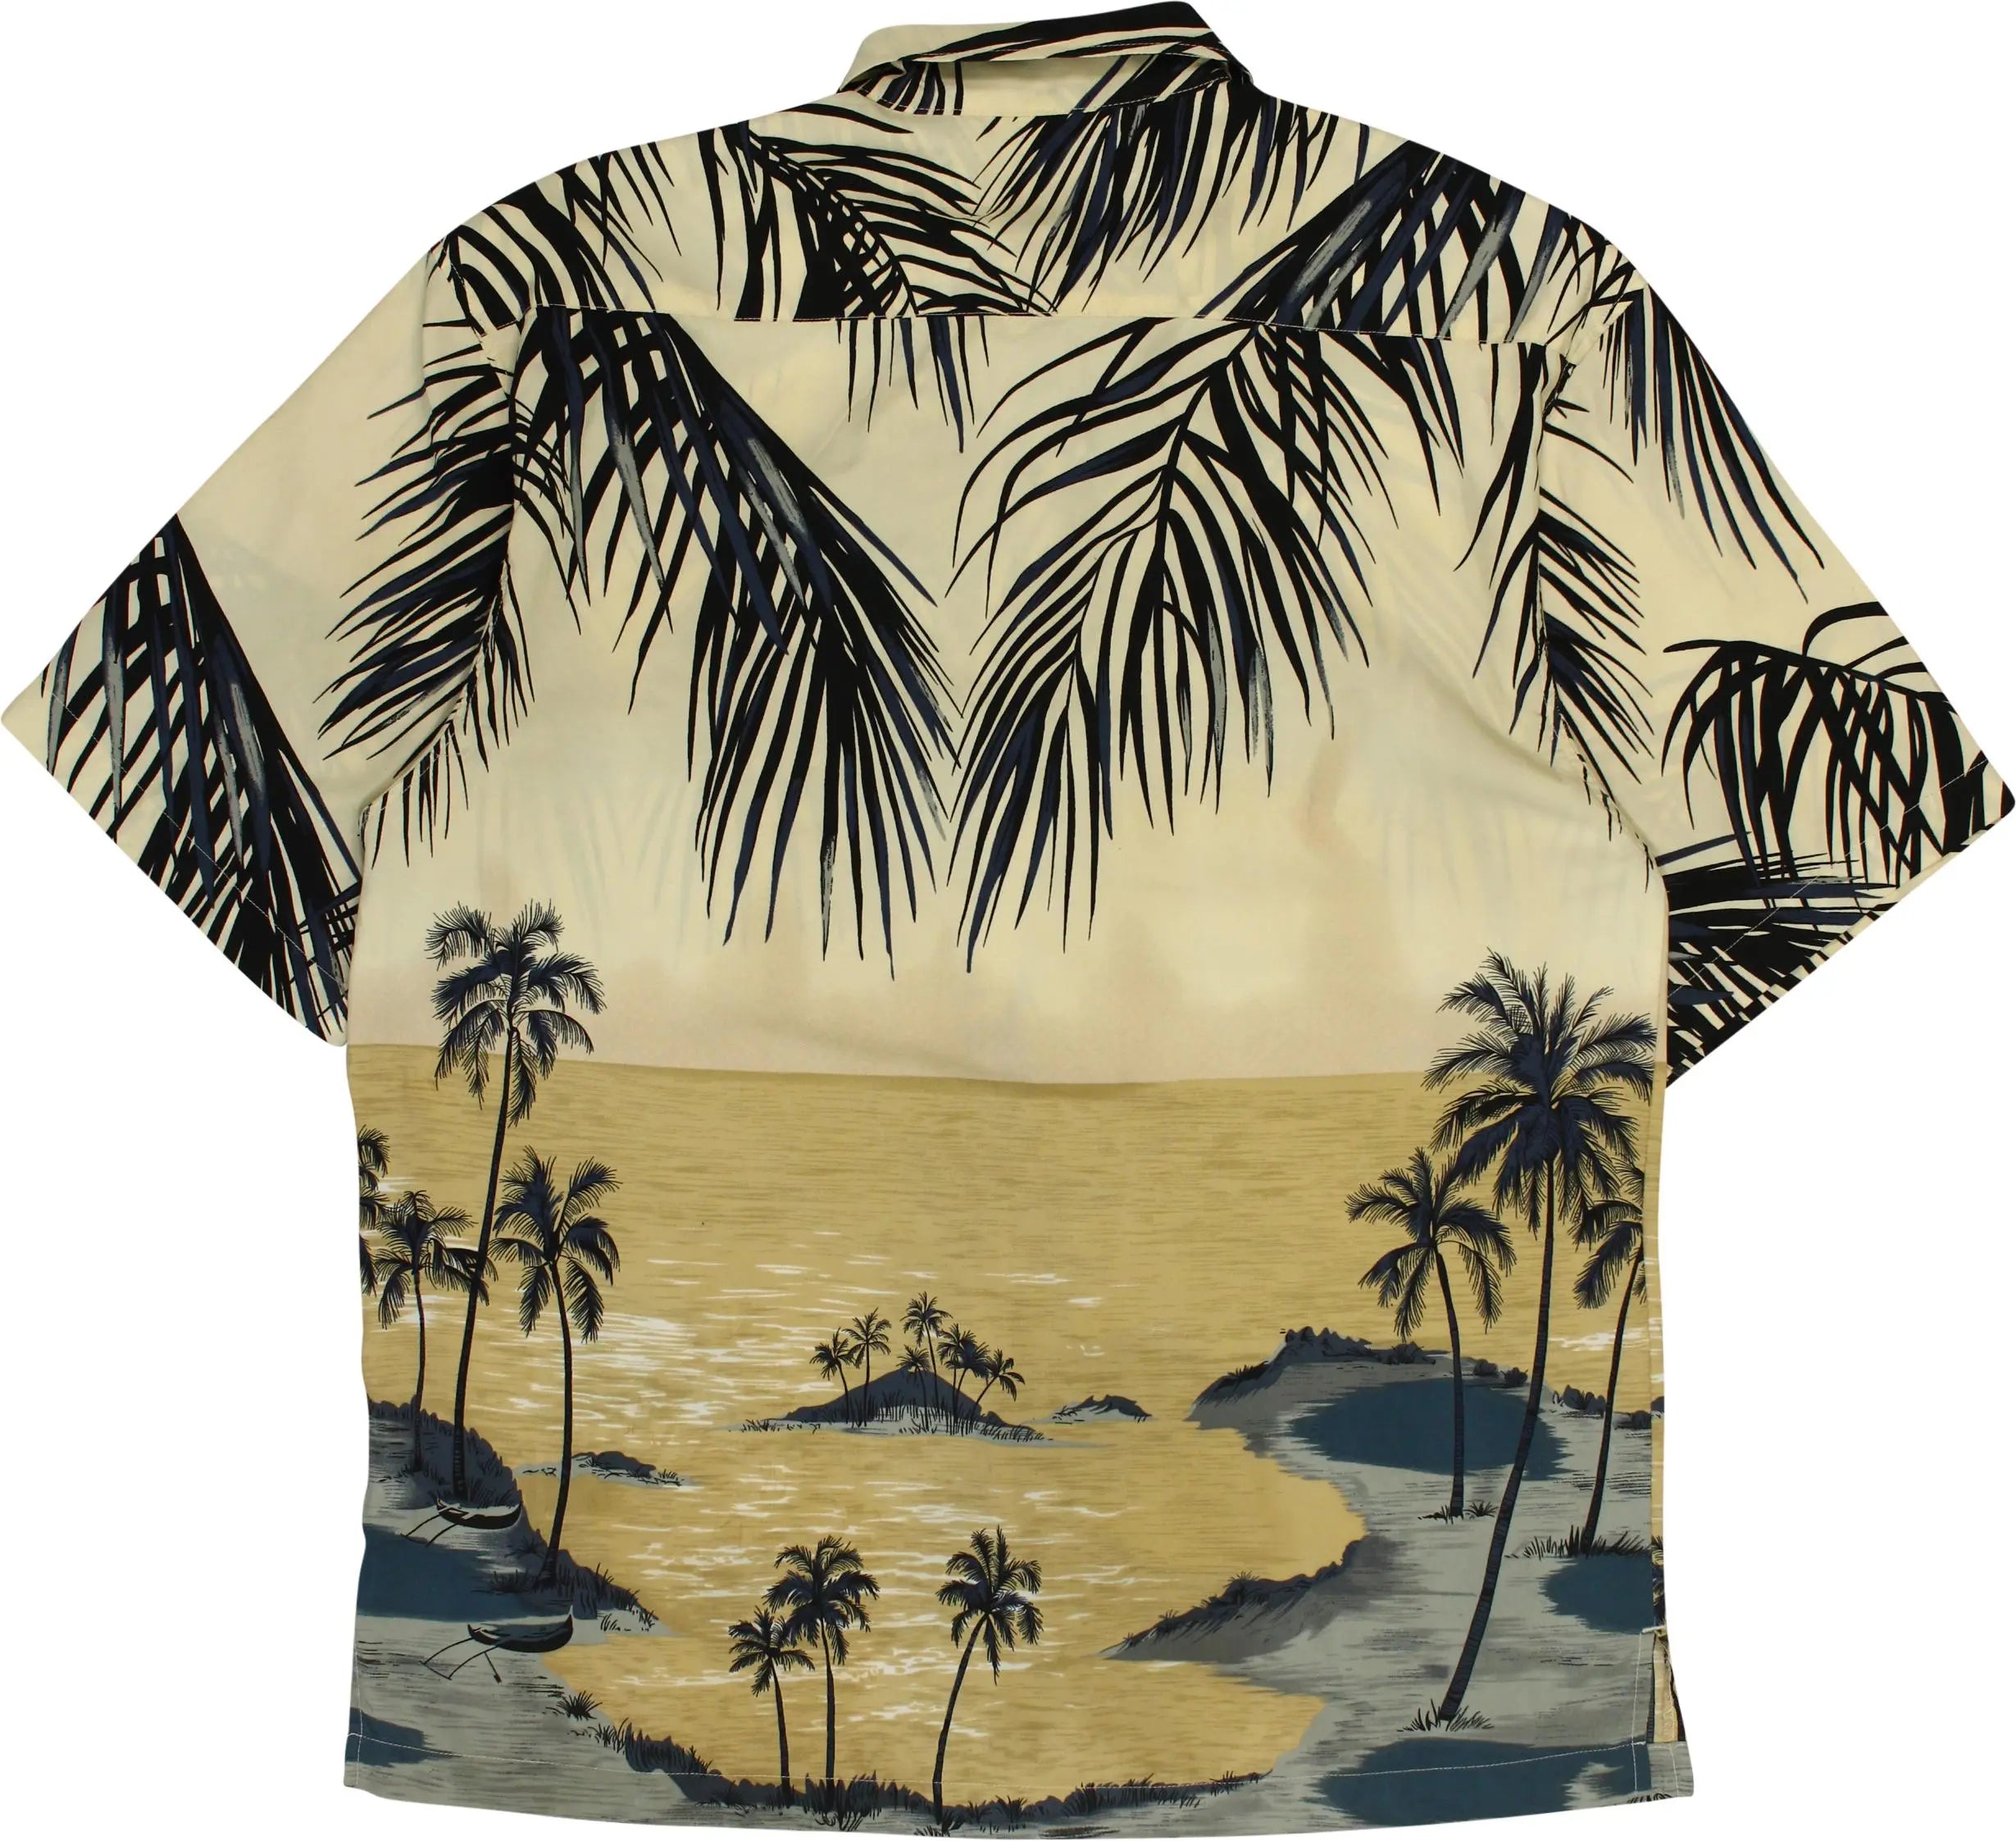 Maui Maui - 90s Hawaiian Shirt- ThriftTale.com - Vintage and second handclothing